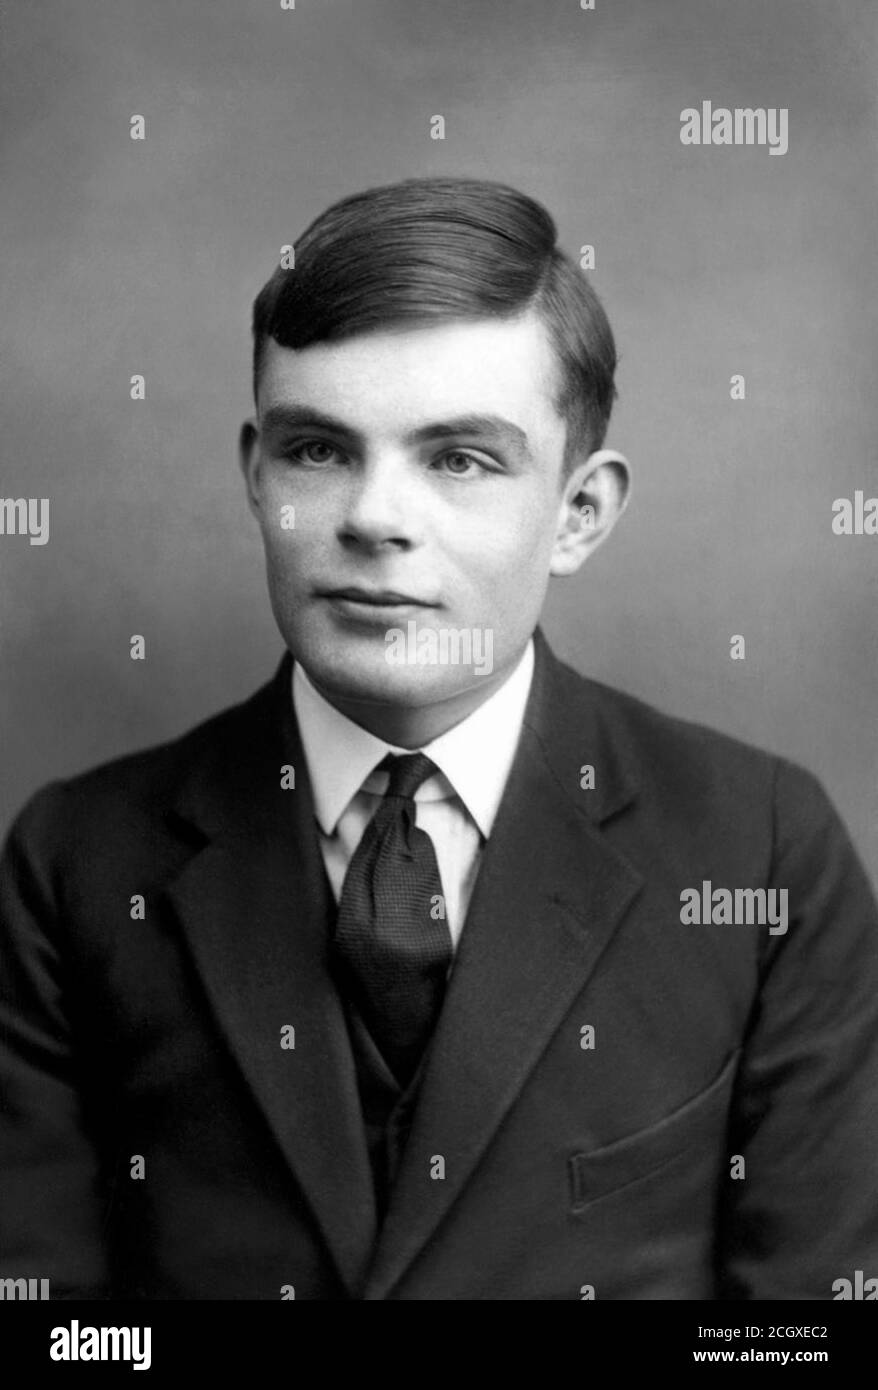 1930 ca., GREAT BRITAIN : The british mathematician ALAN Mathison TURING ( 1912 - 1954 ) when was a young boy, inventor of decoder machine for ENIGMA CODE during the World War II when Nazi U-Boat blocked the Britain . - COMPUTER - WAR HERO - EROE DI GUERRA - MATEMATICO - MATEMATICA - INTELLIGENZA ARTIFICIALE - LGBT VICTIM - GAY - HOMOSEXUAL - HOMOSEXUALITY - omosessuale - omosessualità - portrait - ritratto - tie - cravatta - collar - colletto - celebrità da giovane giovani ragazzo - celebrity celebrities when was young ---  Archivio GBB Stock Photo